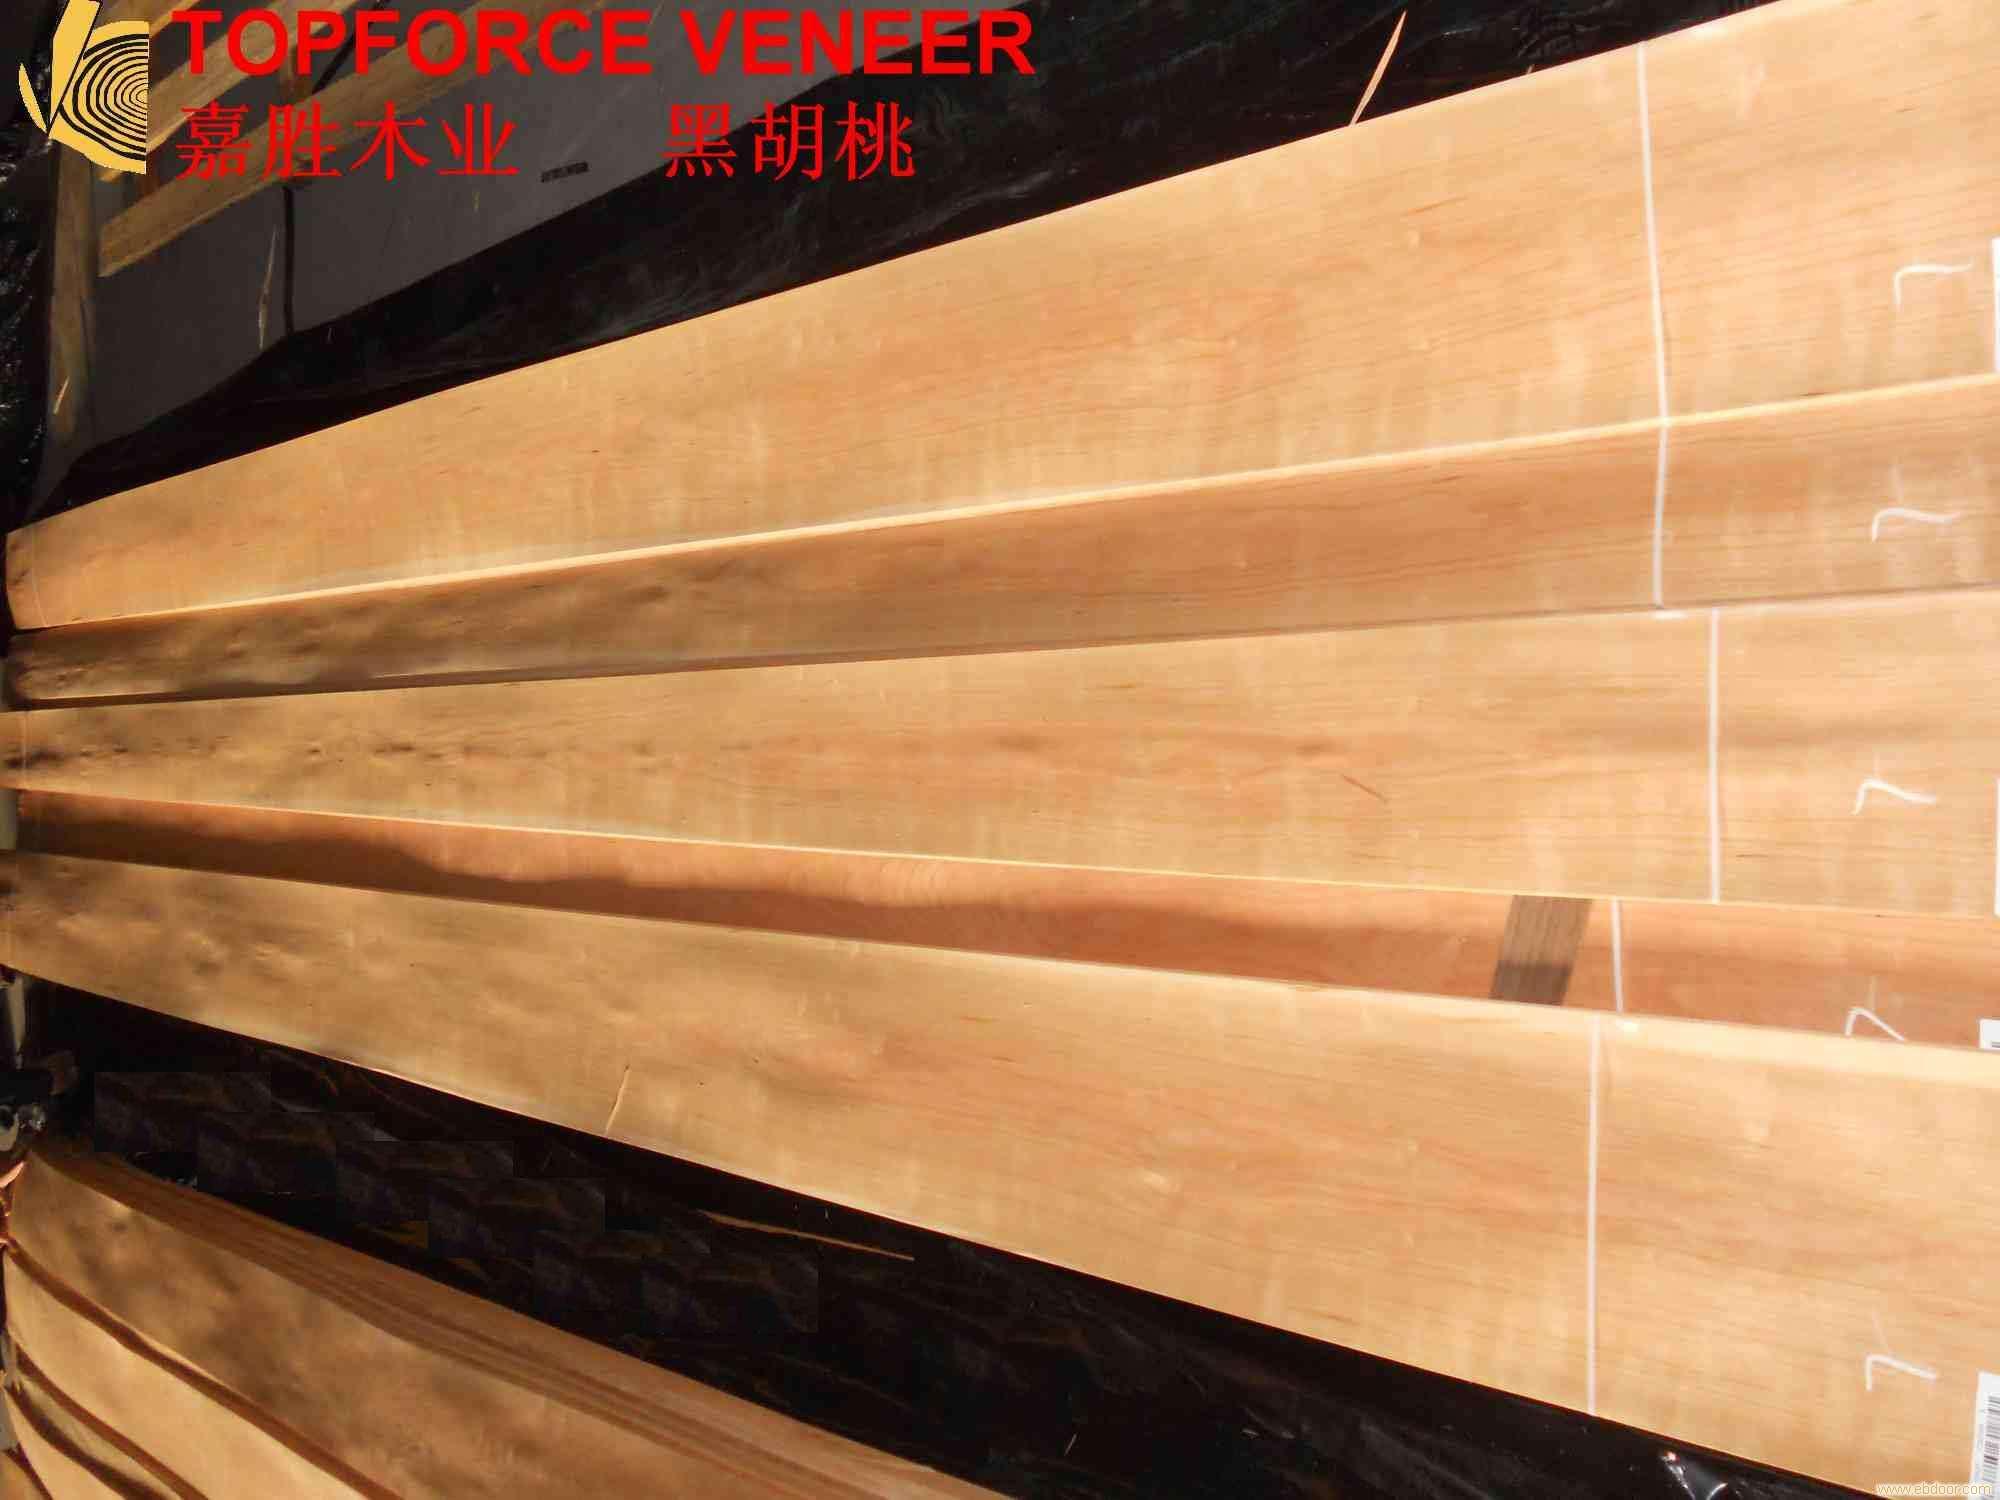 超长装饰板,Long Panel,Long Panel Veneer,三米六长大板,3600mm,大板料